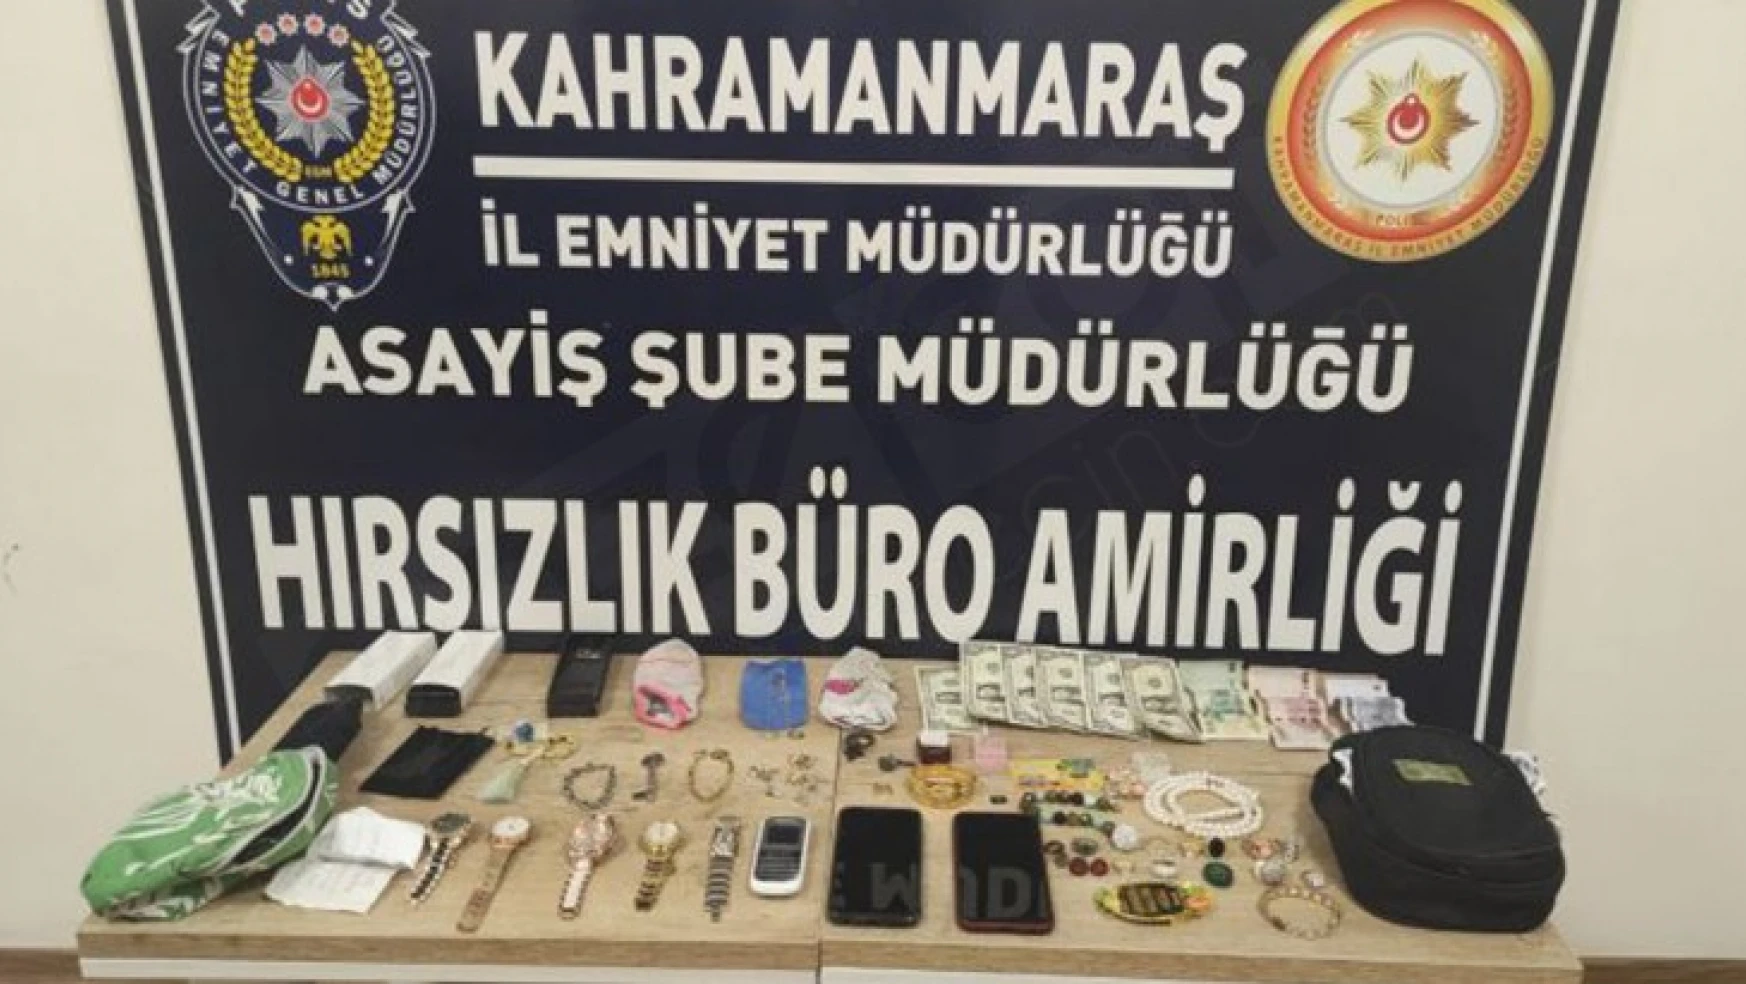 Kahramanmaraş'ta düzenlen hırsızlık operasyonunda 1'i kadın 4 kişi yakalandı